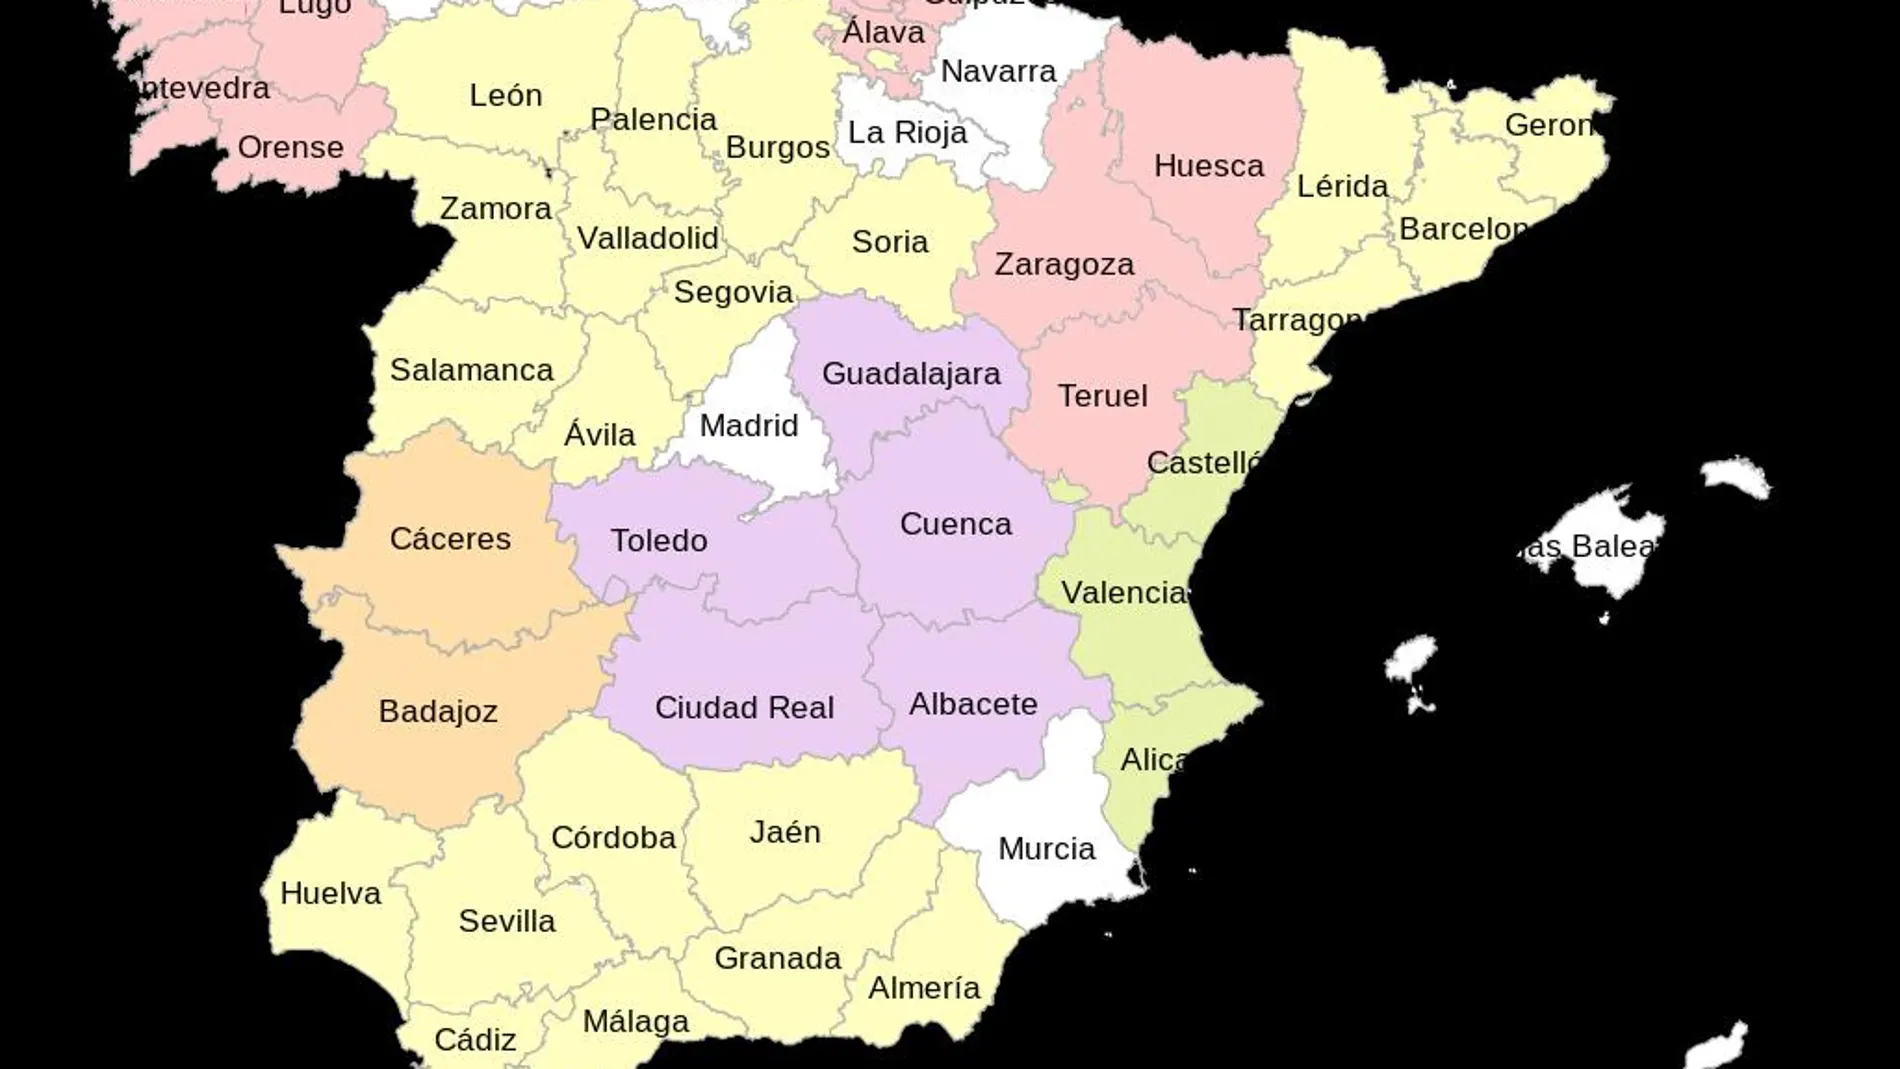 ventana jurado Regresa Cuáles son las provincias de España más grandes que Madrid y Barcelona?